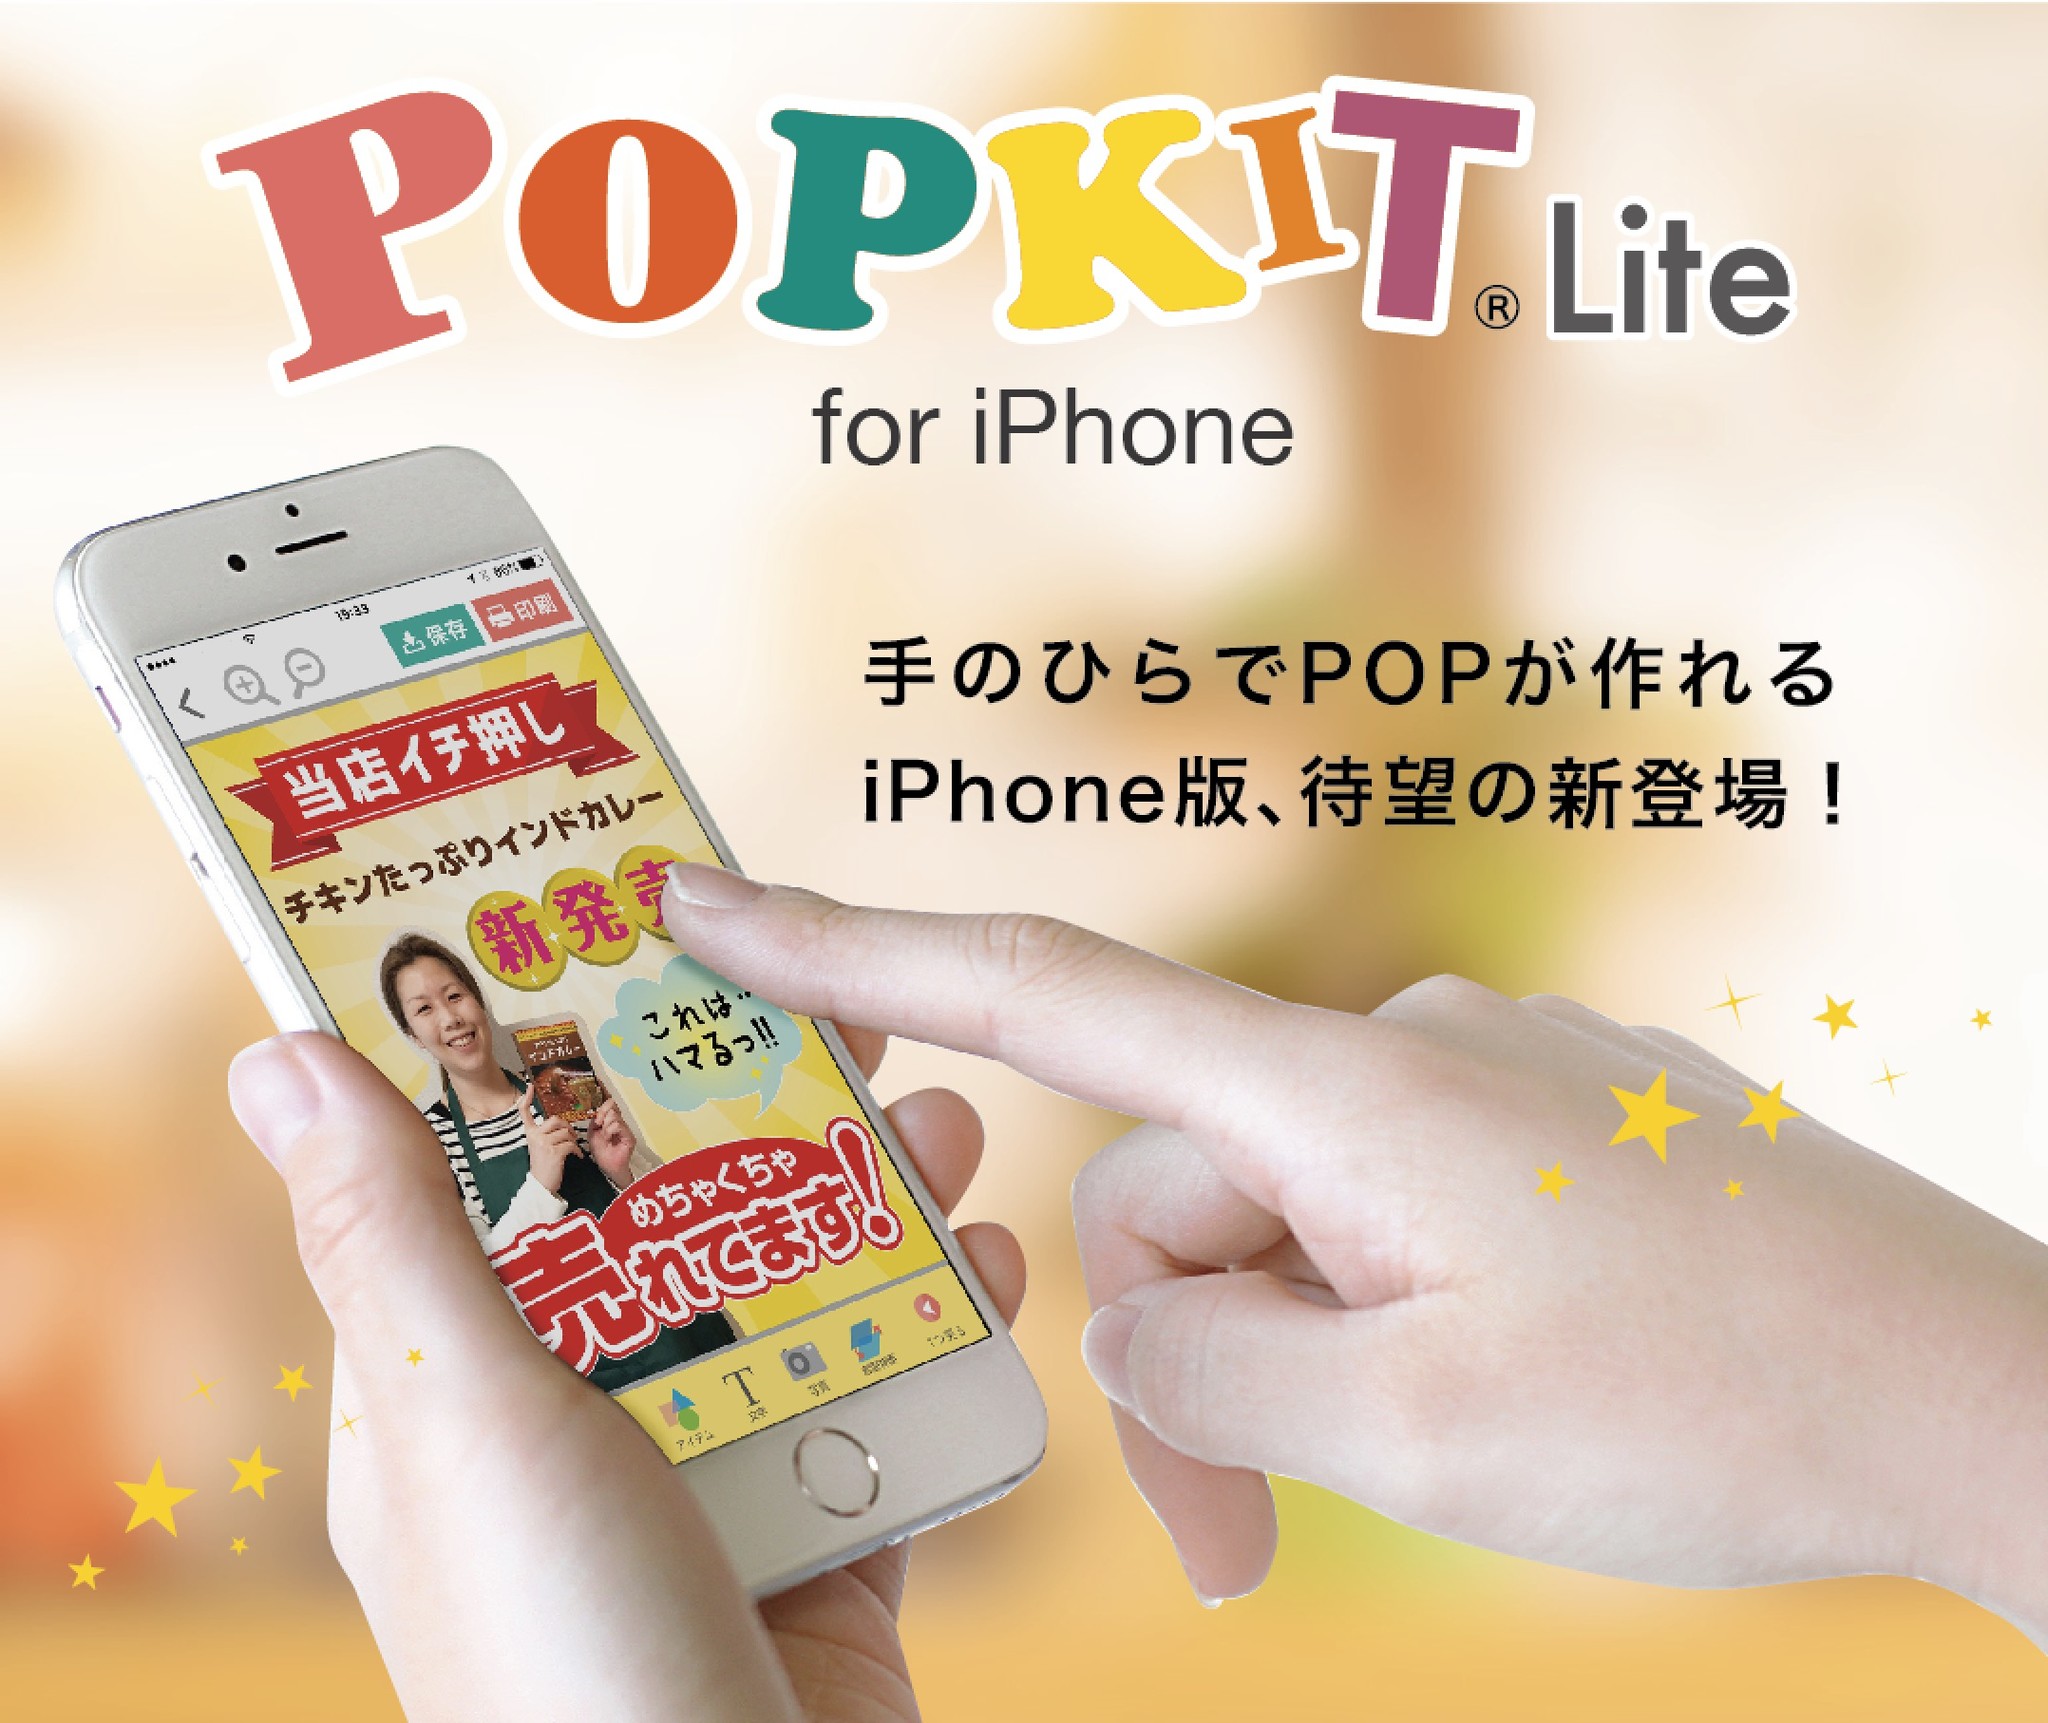 手のひらでお店のpopを作ろう 日本初のpop作成アプリpopkit ポップキット のiphone版 Popkit Lite ついに登場 レイン バード株式会社のプレスリリース